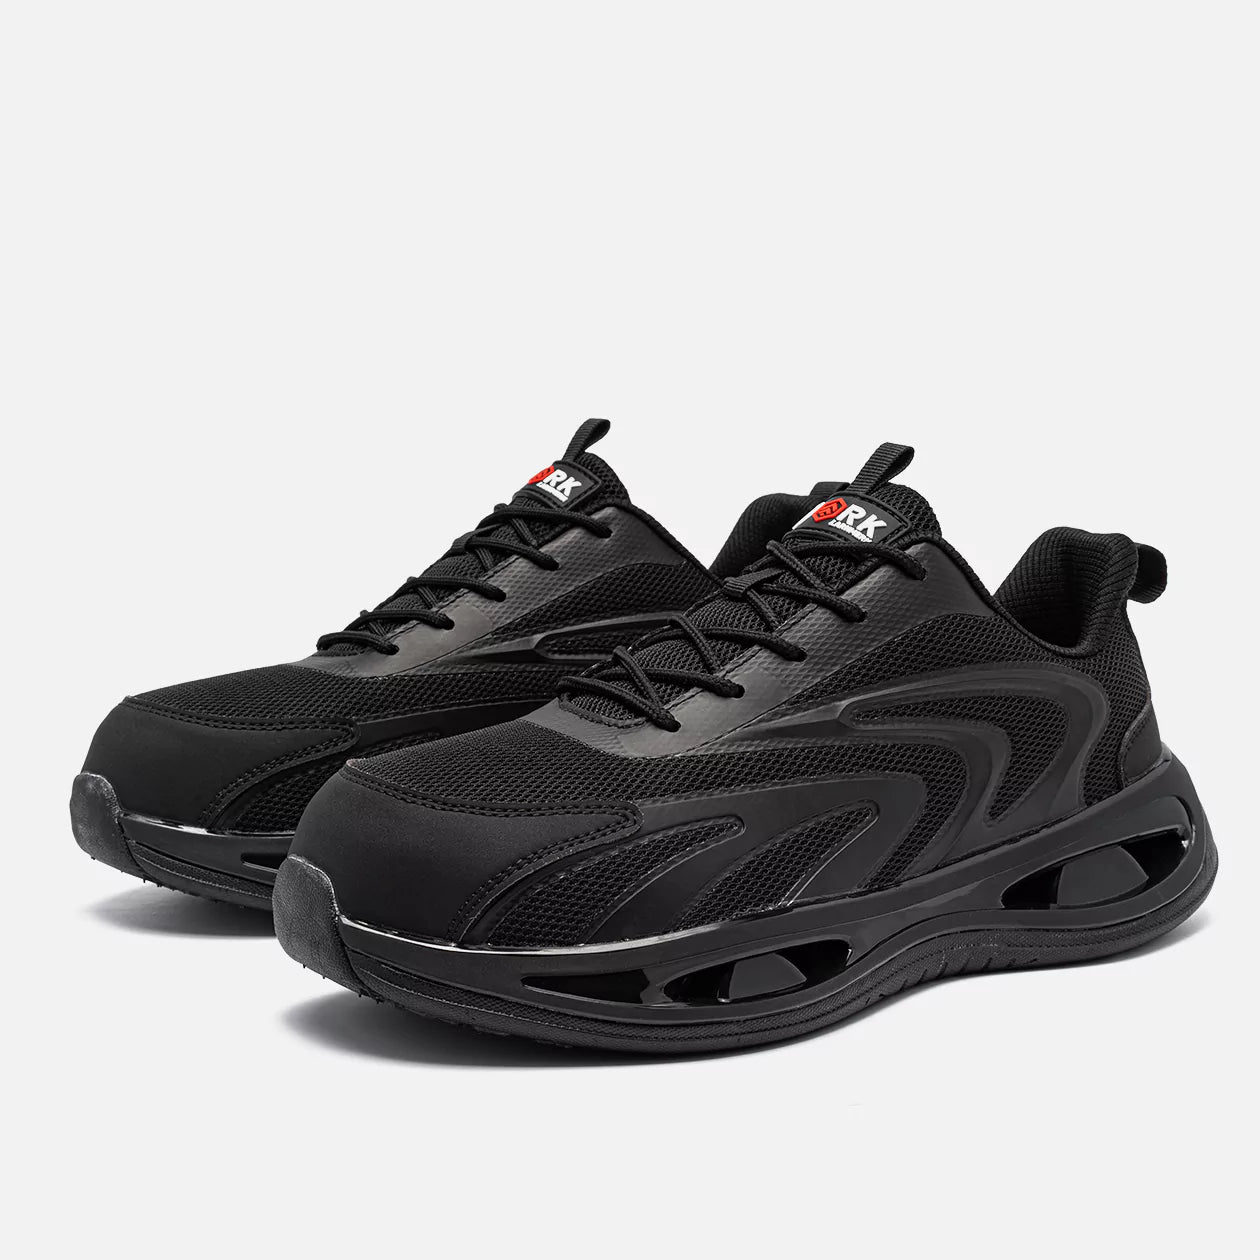 Larnmern 21094 Steel Toe Sneakers for Women, Black